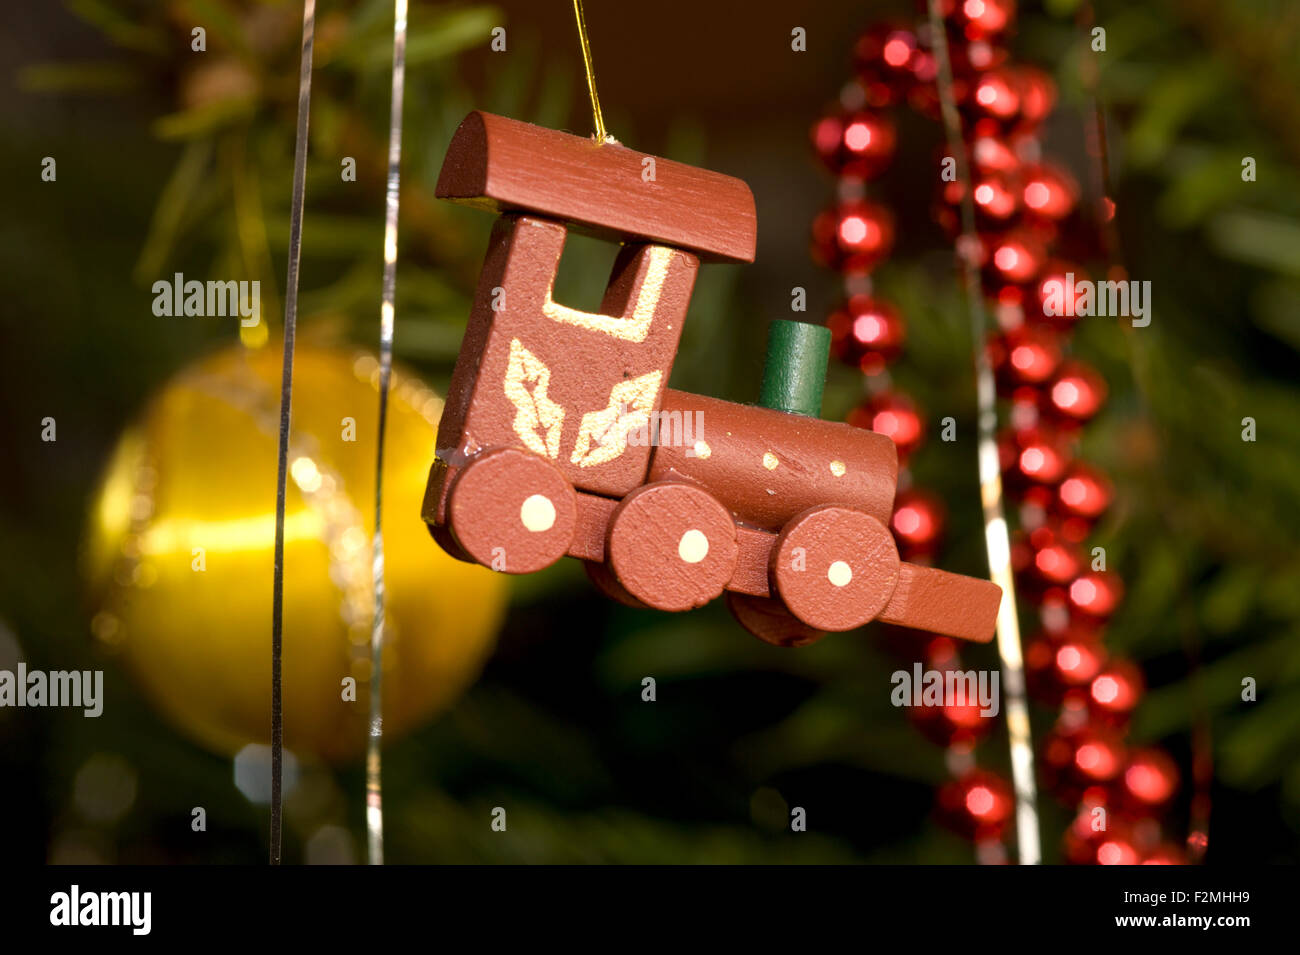 Cerrar detalle de una locomotora de vapor, juguete de madera colgando de un árbol de Navidad tradicional Foto de stock